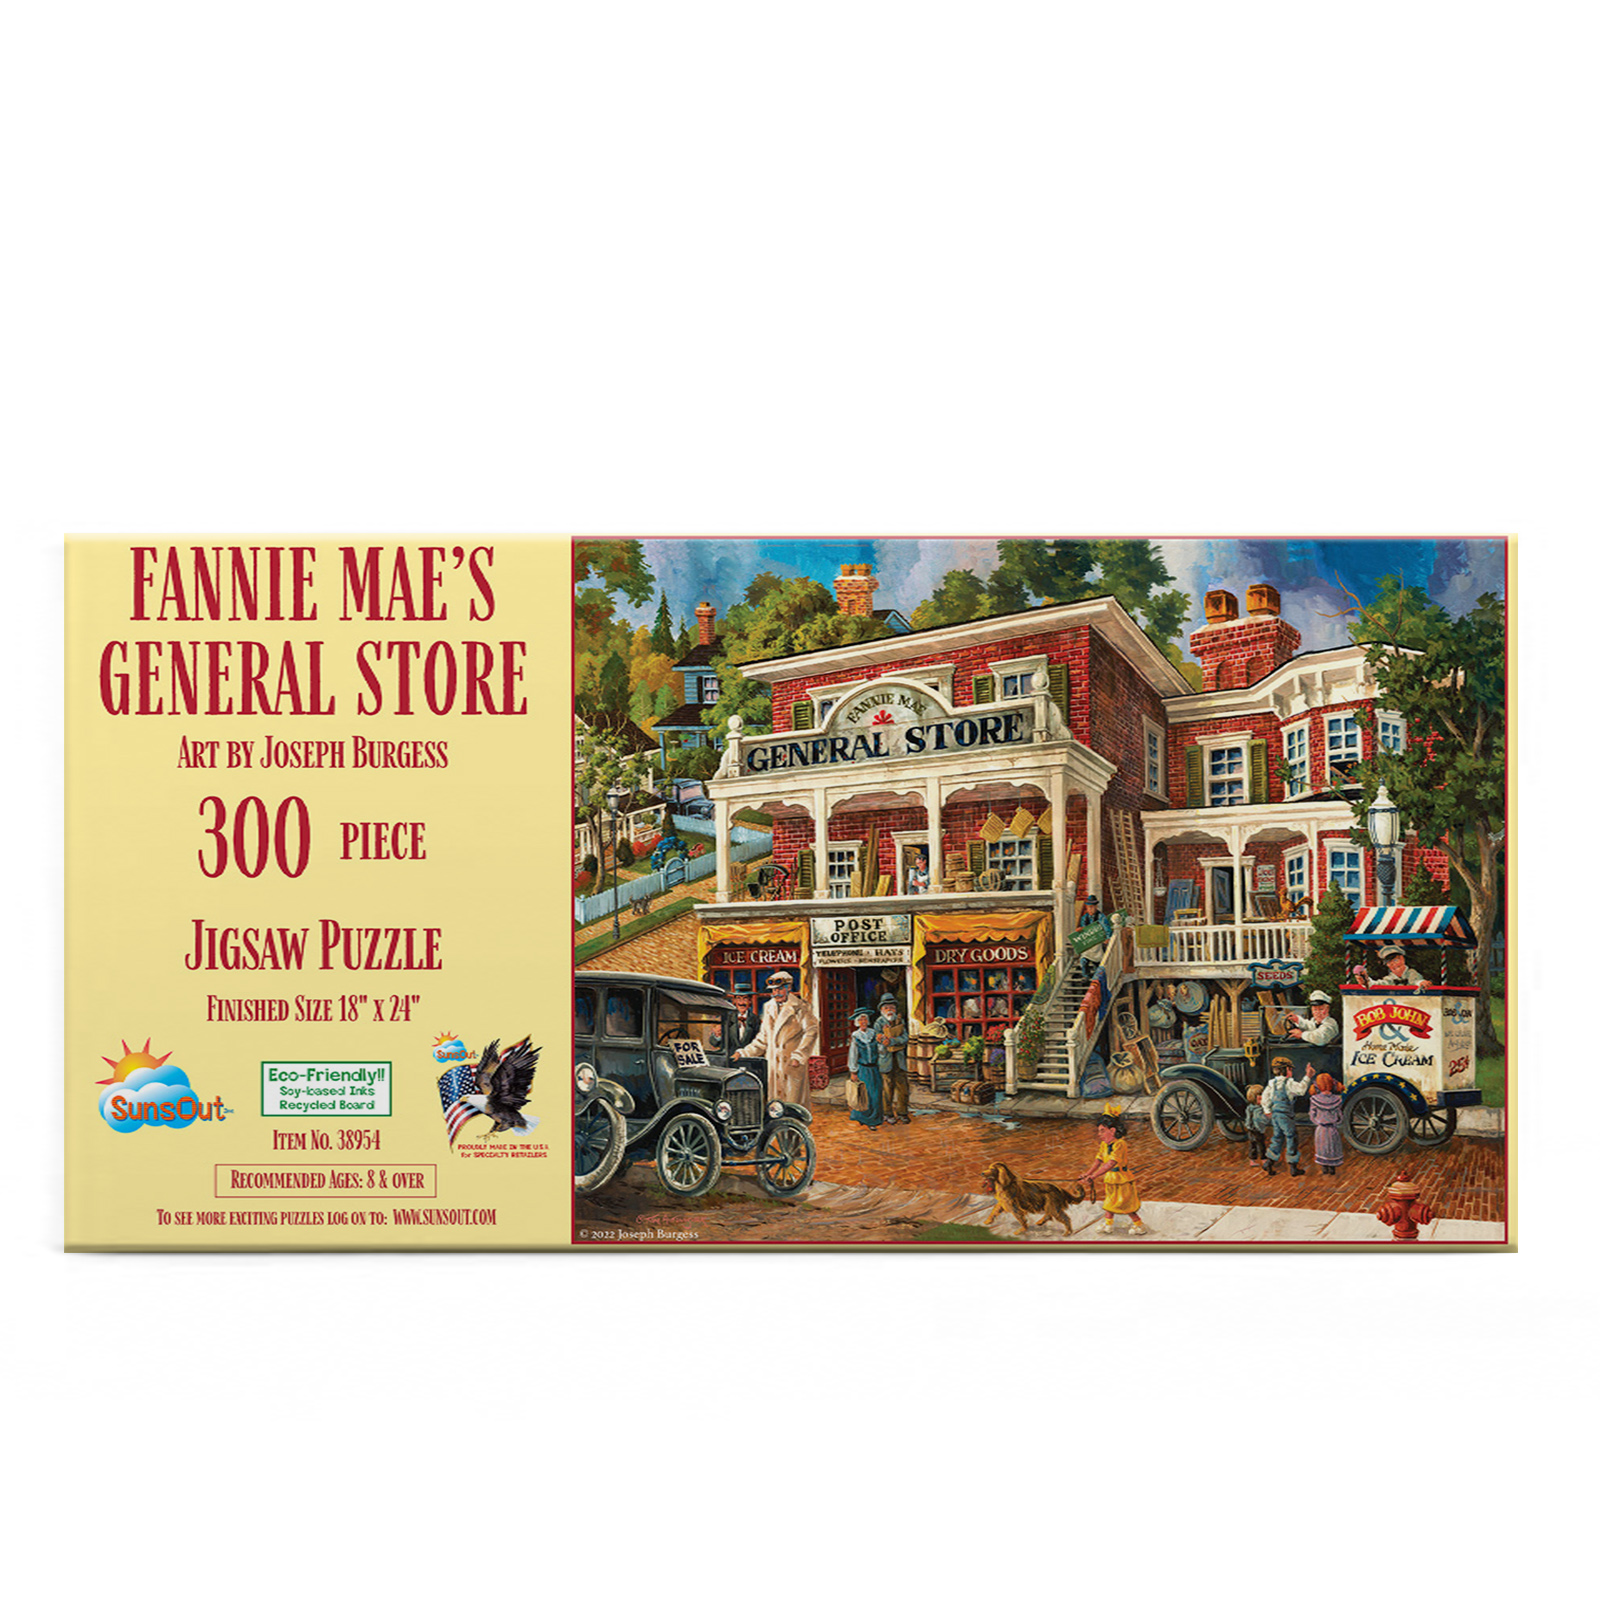 Fannie Mae's General Store